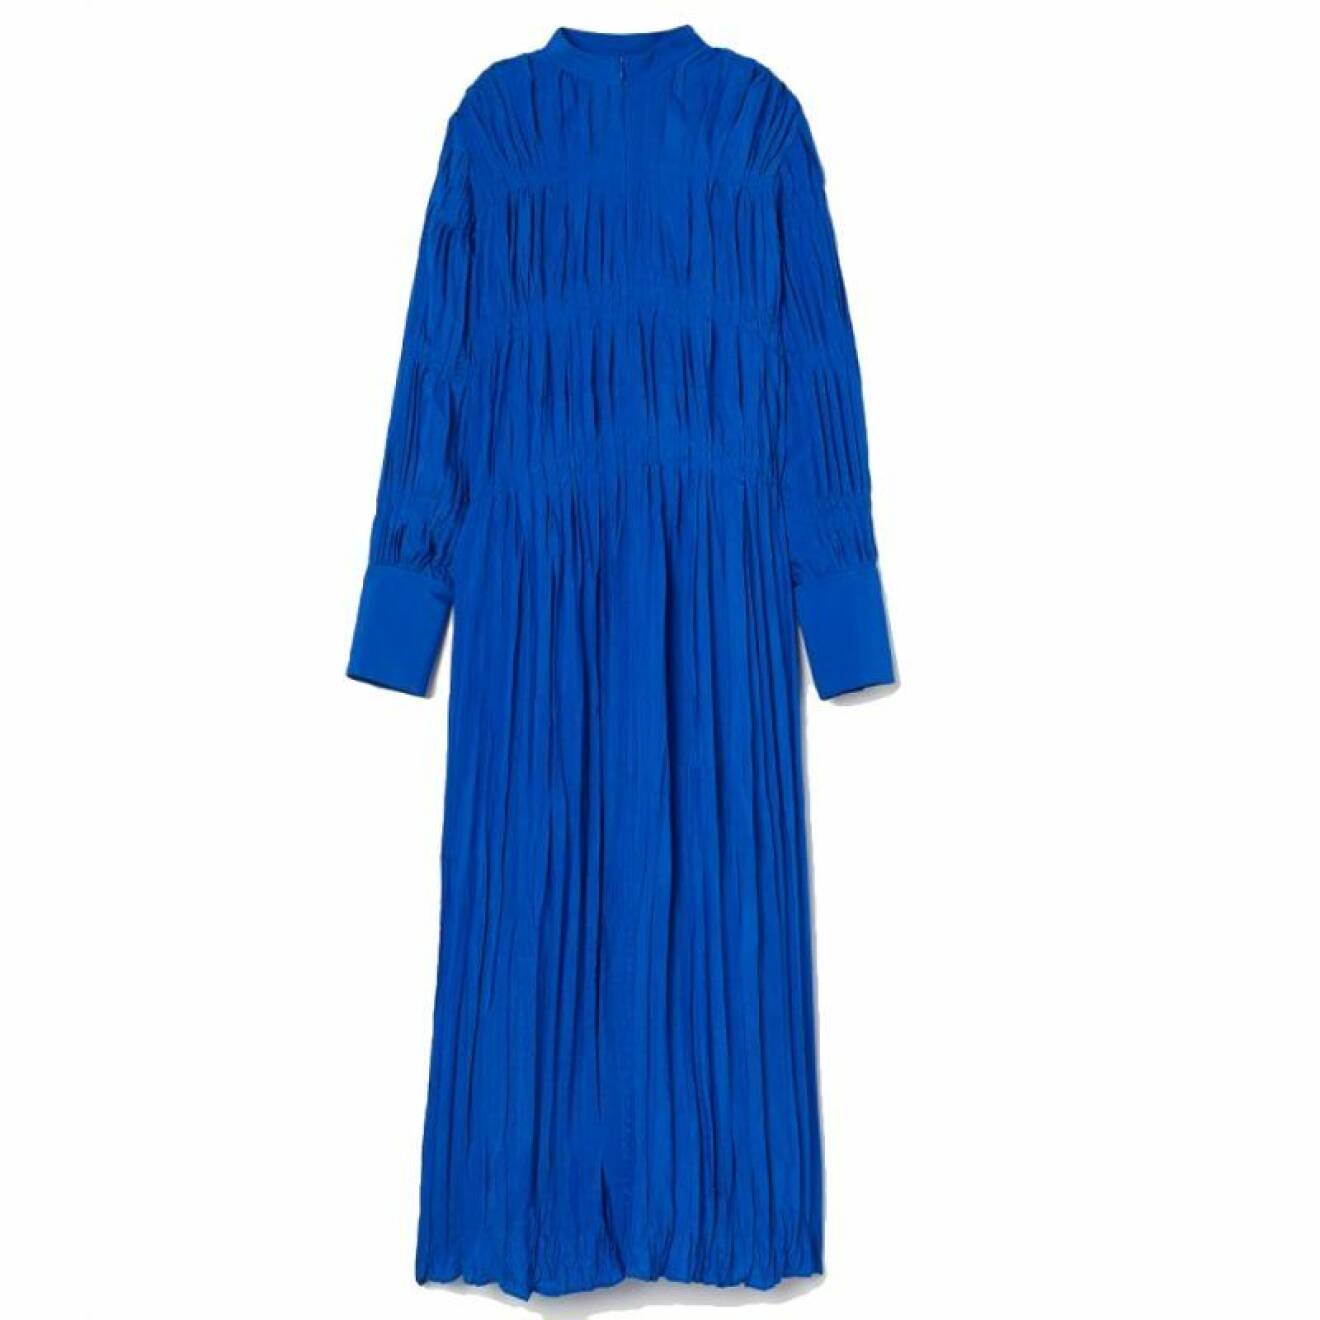 Klarblå klänning från H&M